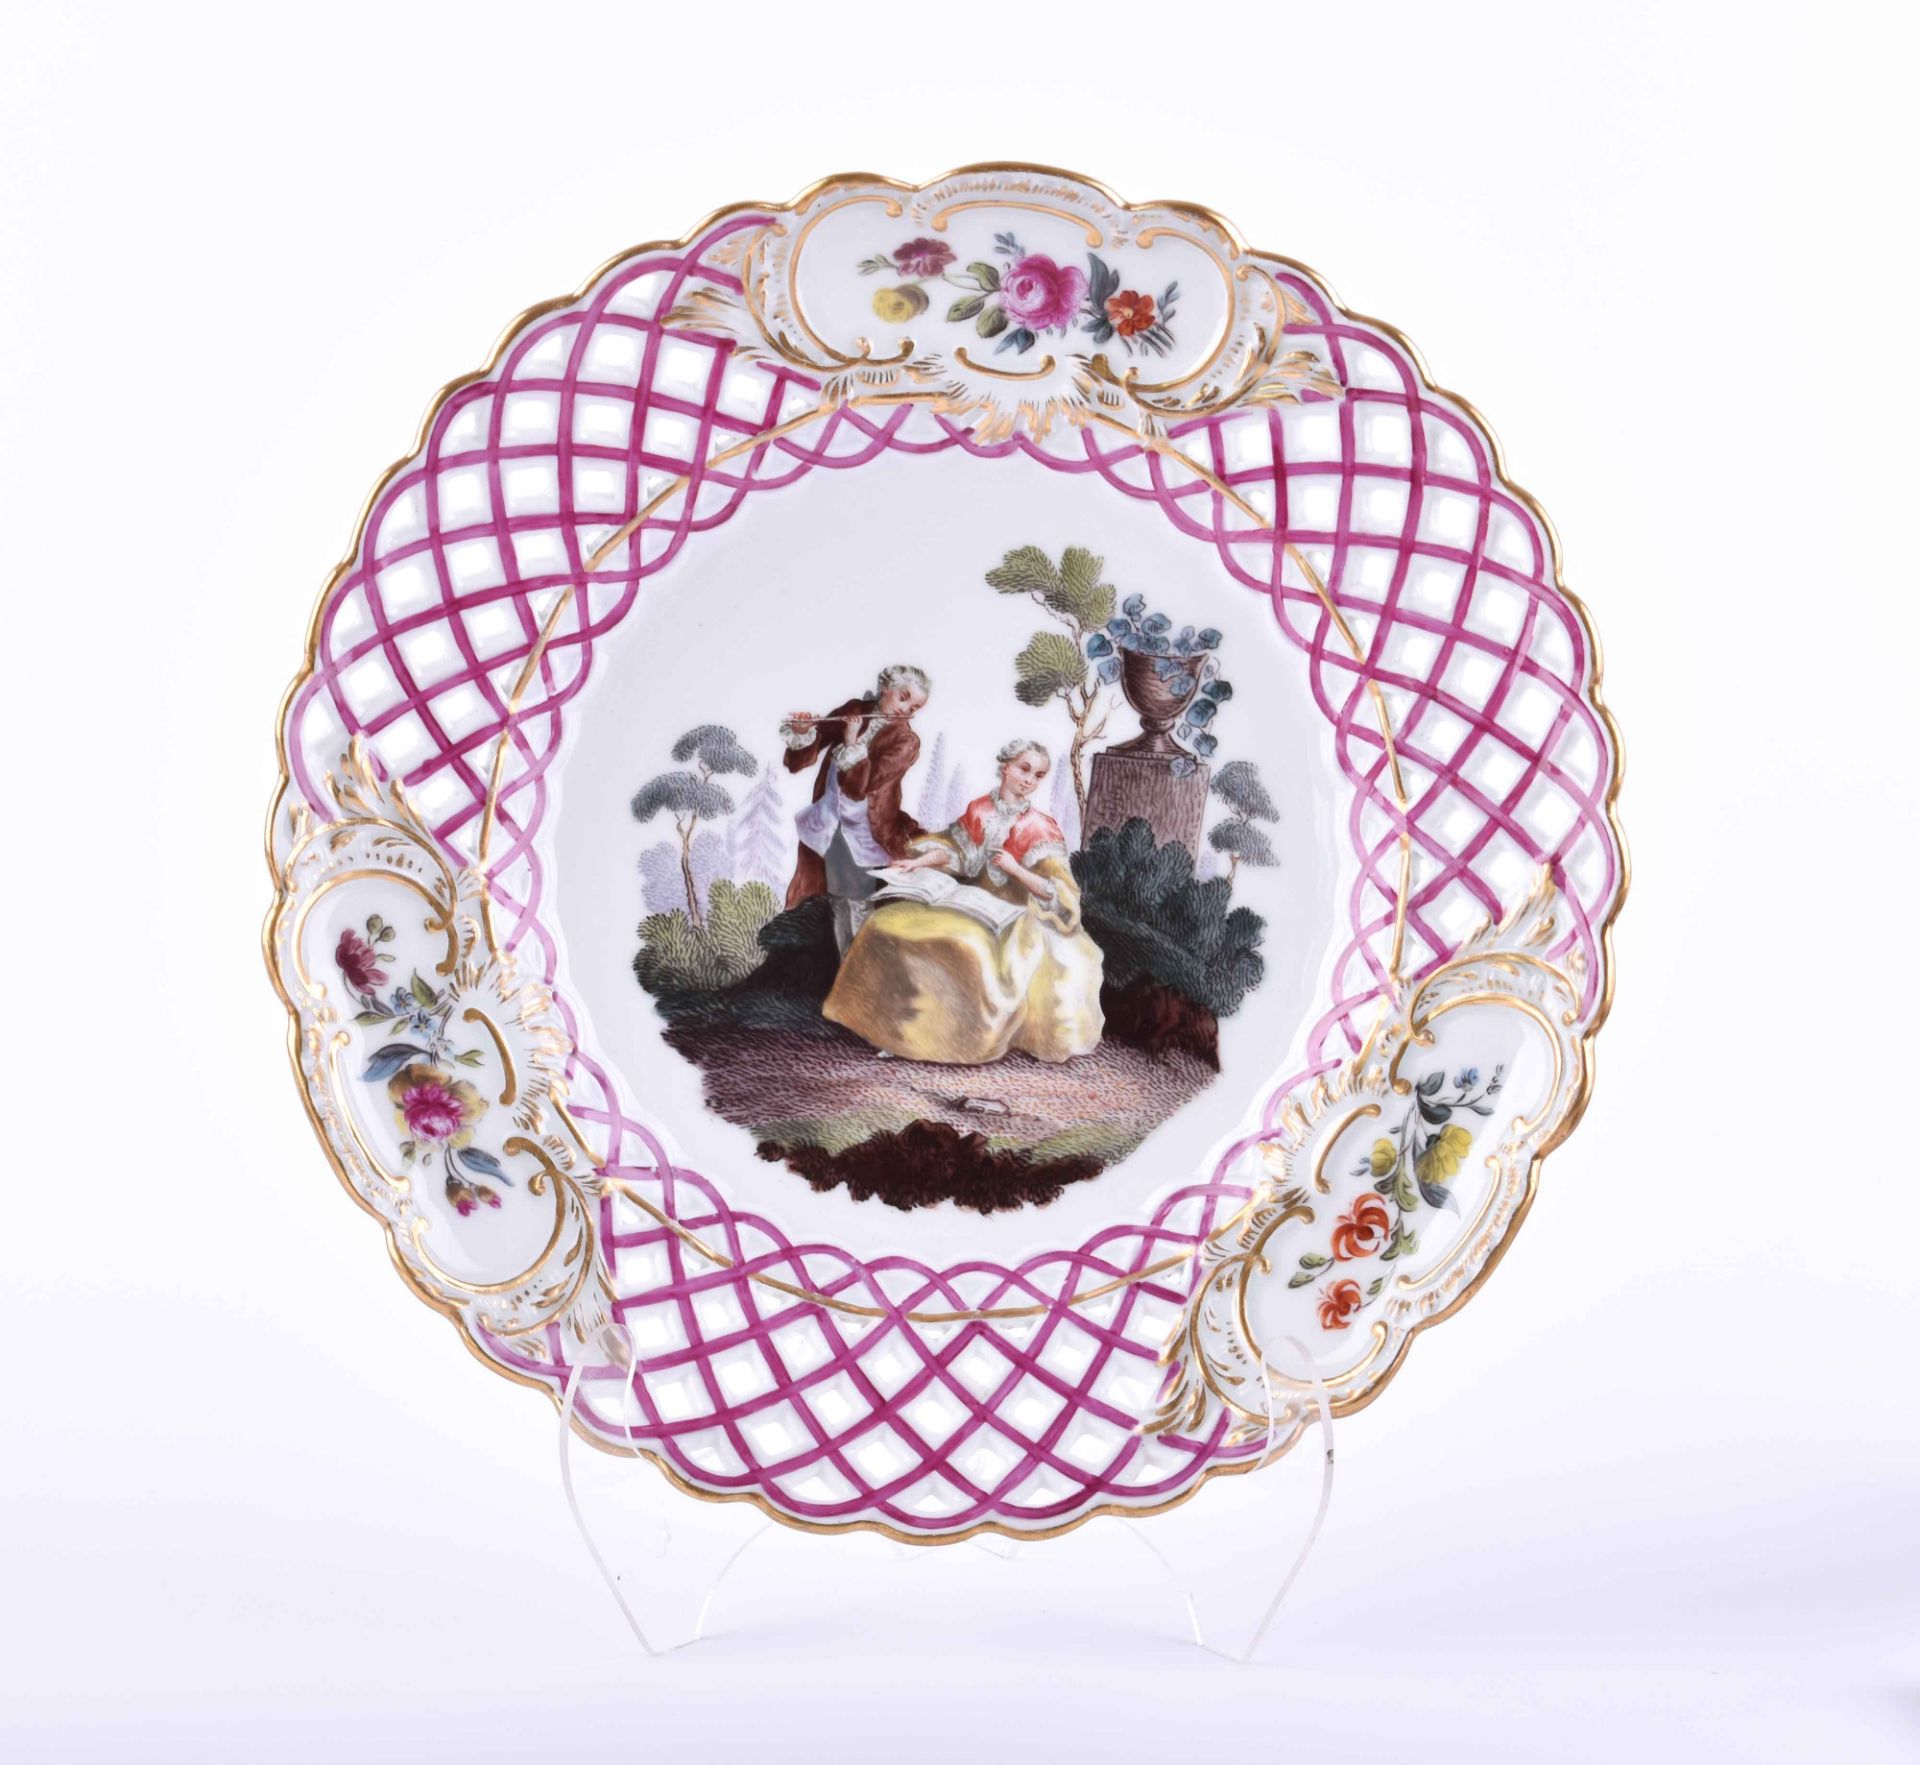  Plate Meissen around 1840/60